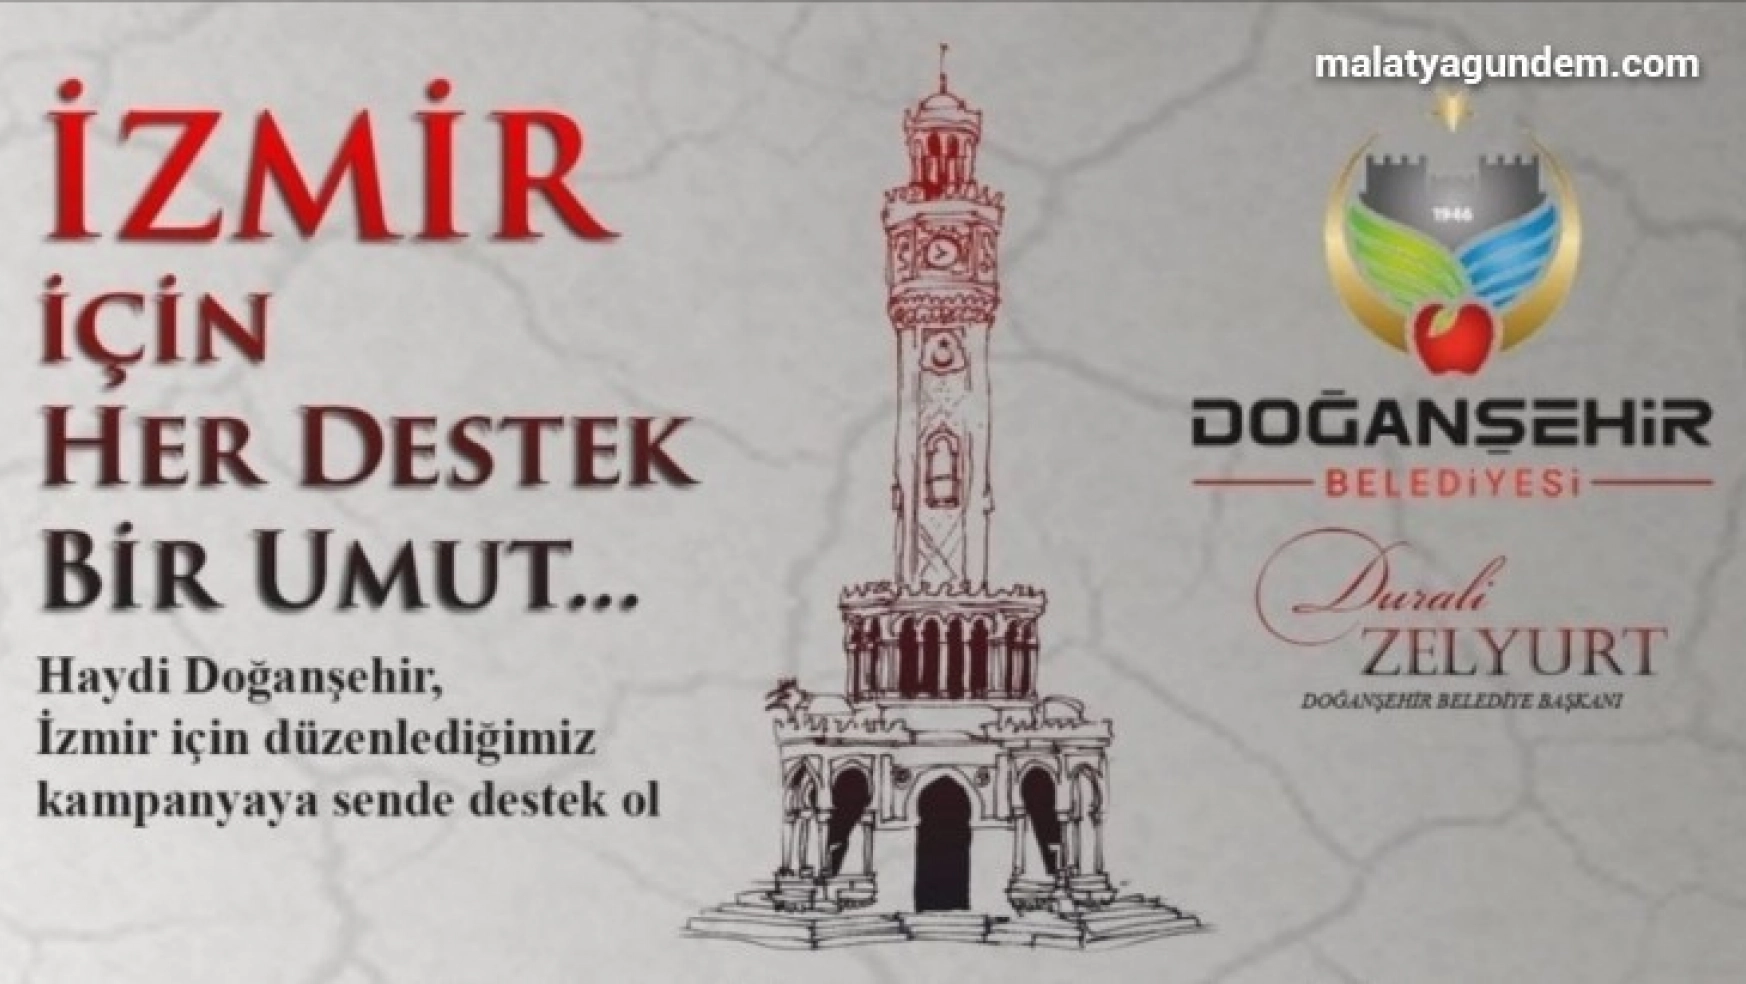 Doğanşehir'de 'İzmir İçin Her Destek Bir Umut' kampanyası